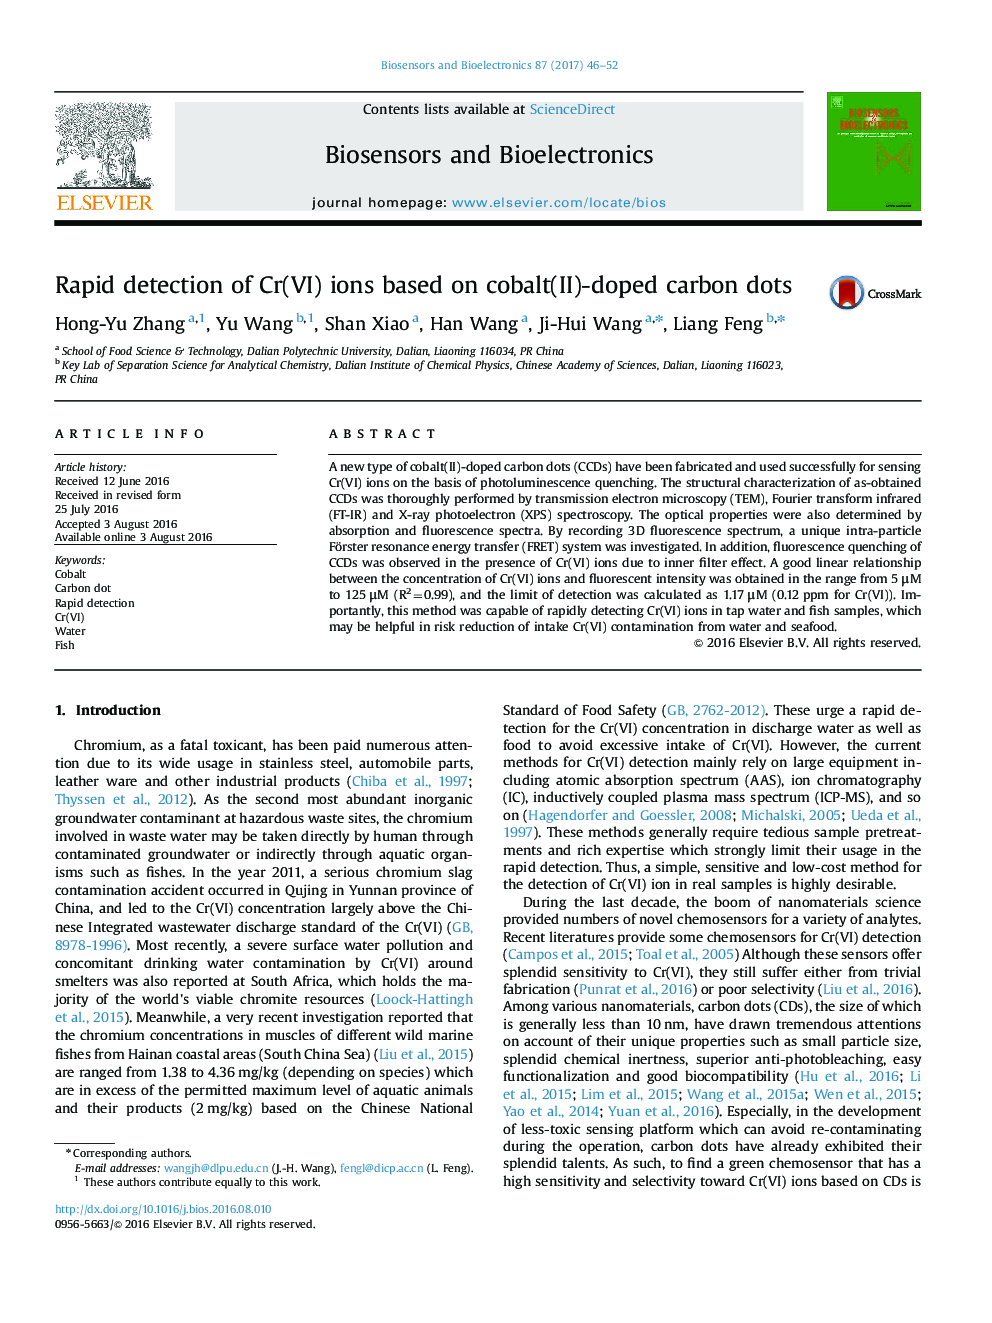 تشخیص سریع کروم یون های Cr(VI) مبتنی بر نقاط کربن آلاییده شده با کبالت (II) 